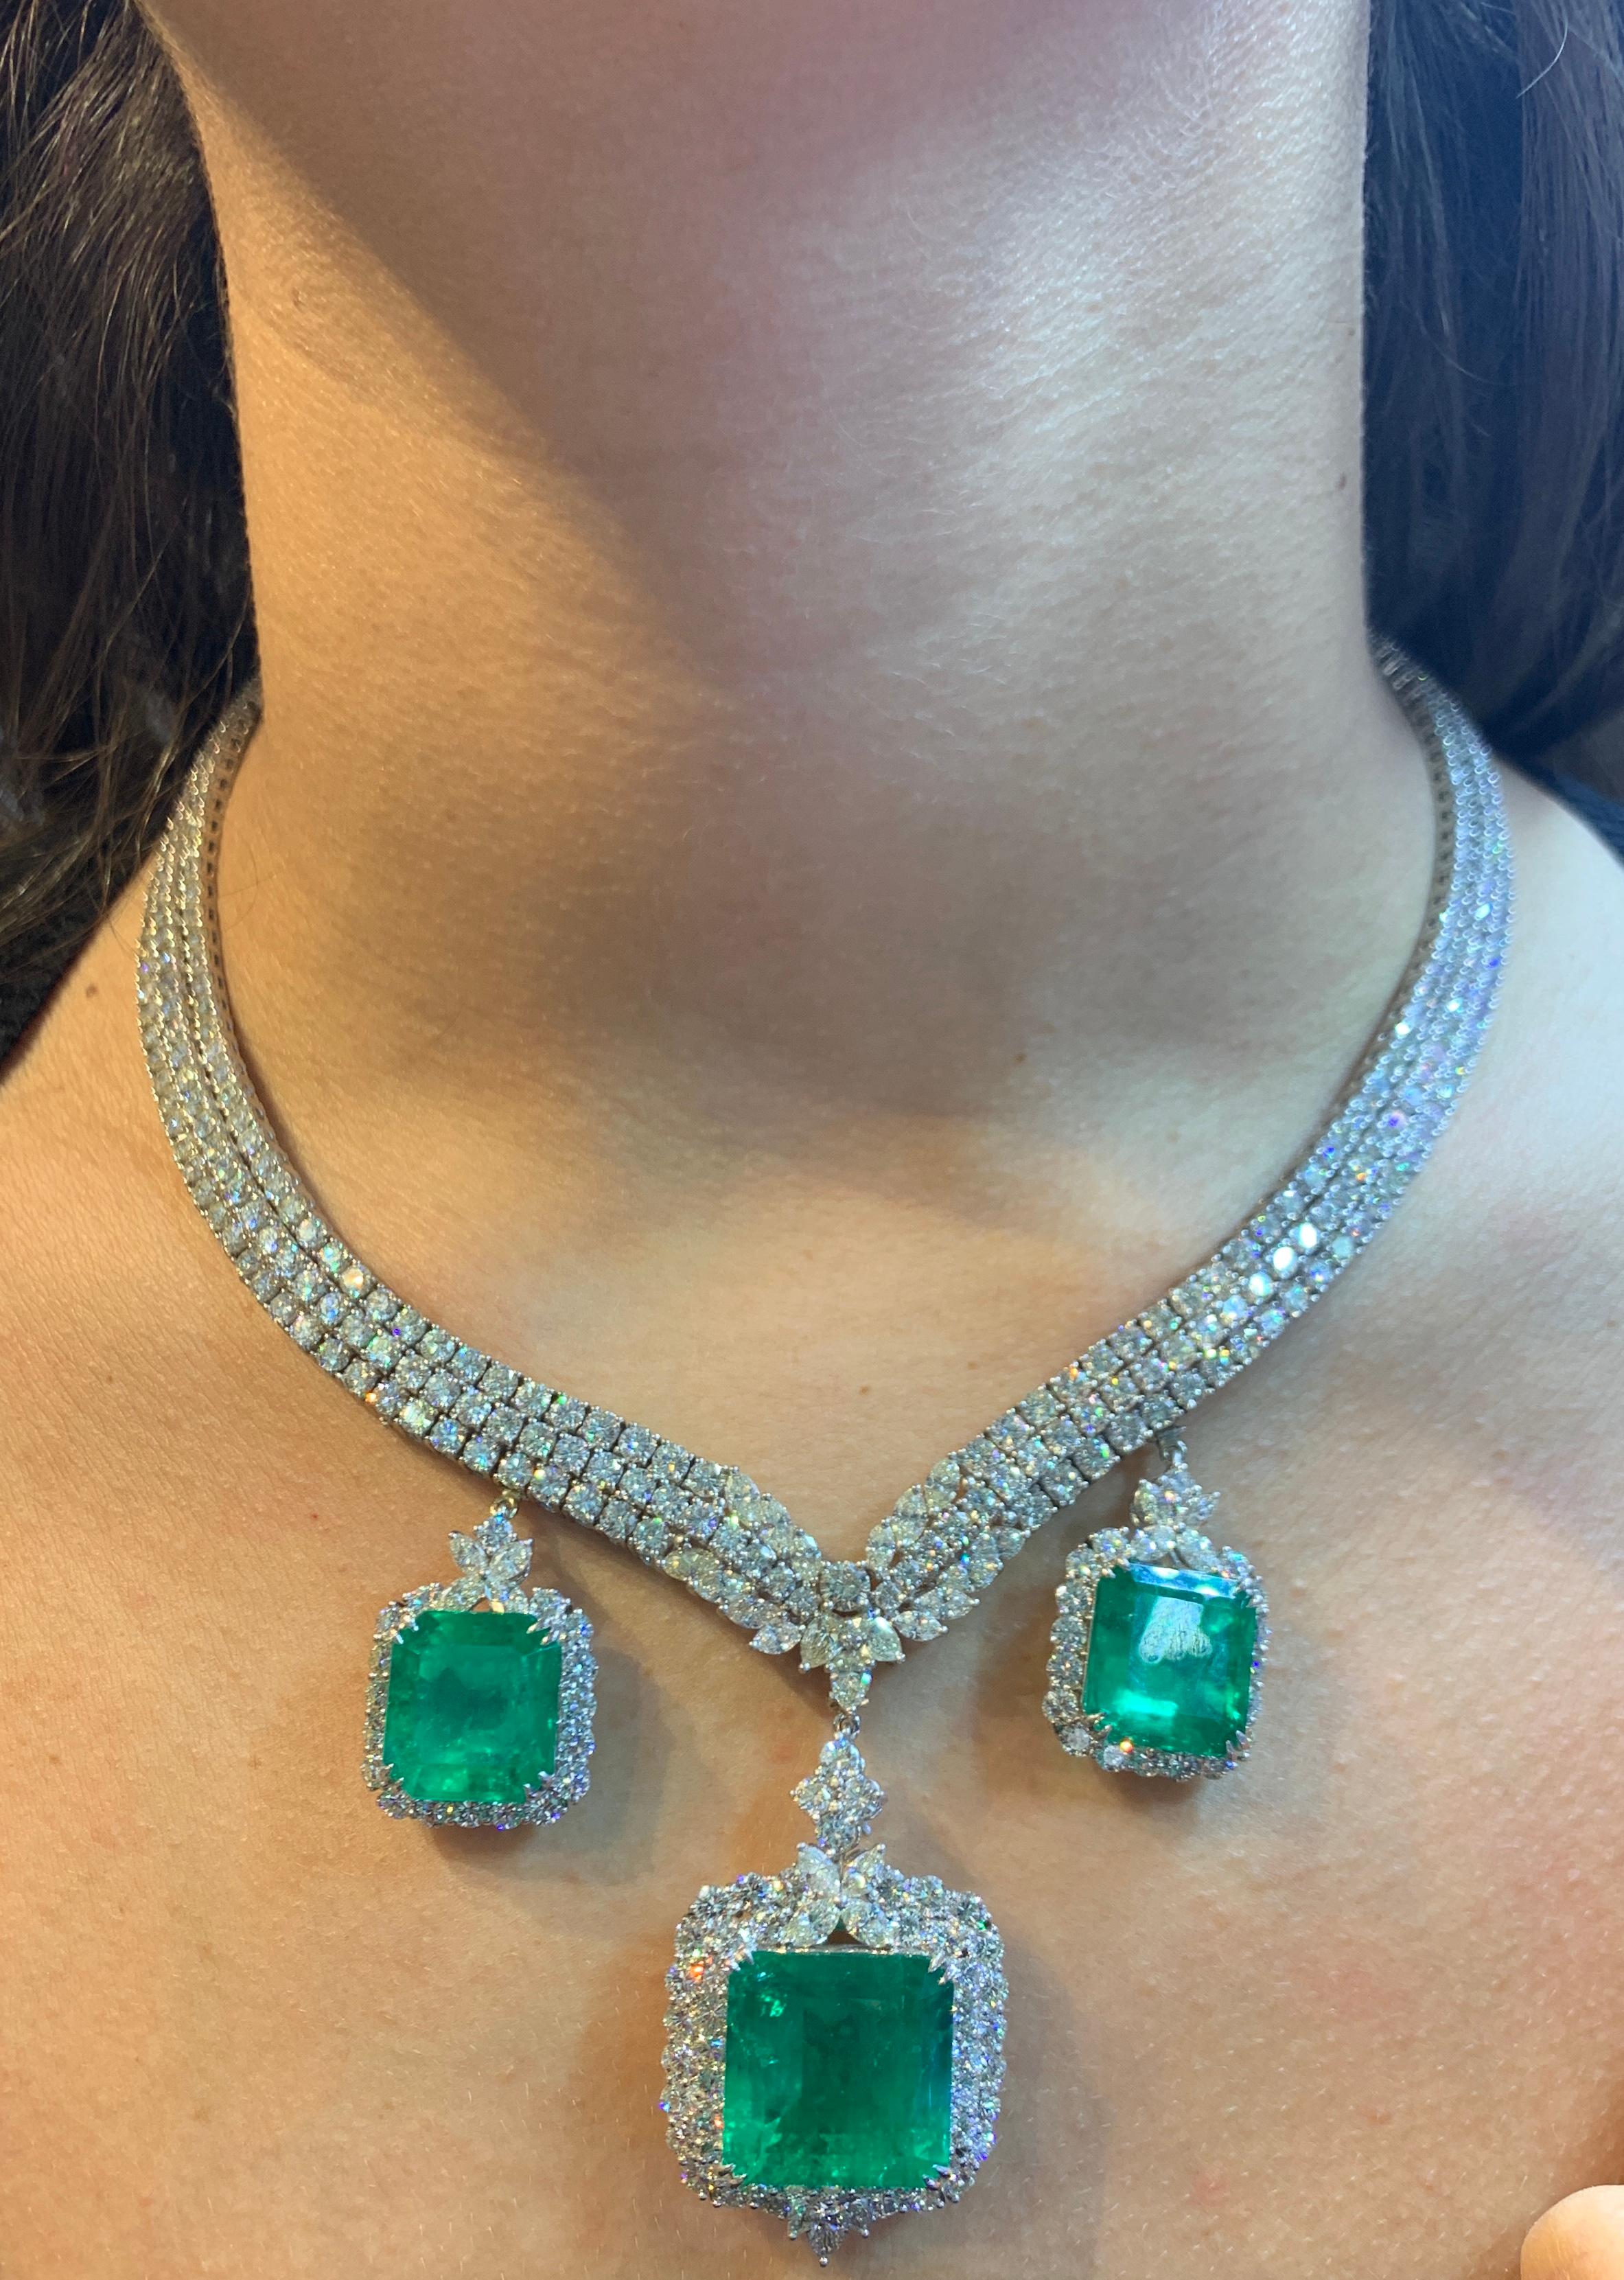 Wichtige zertifizierte kolumbianische Smaragd und Diamant Halskette
Abnehmbare Smaragdtropfen.
AGL Labor zertifiziert kolumbianischen Smaragd Gewicht: 59,56 Karat 
18 Karat Weißgold
